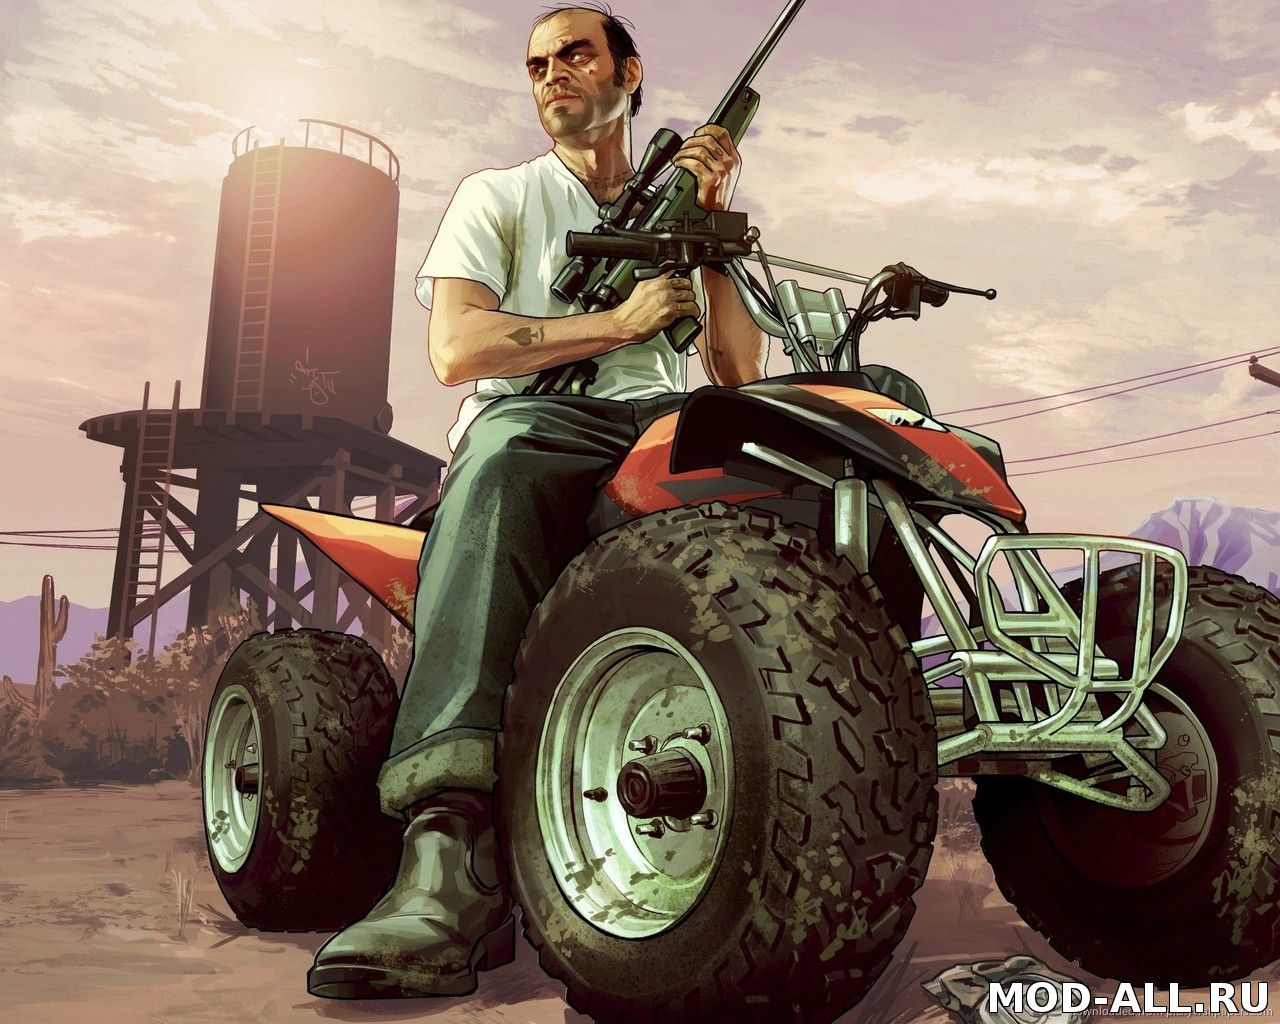 Новость Зачем я буду играть в Grand Theft Auto 5 на PC